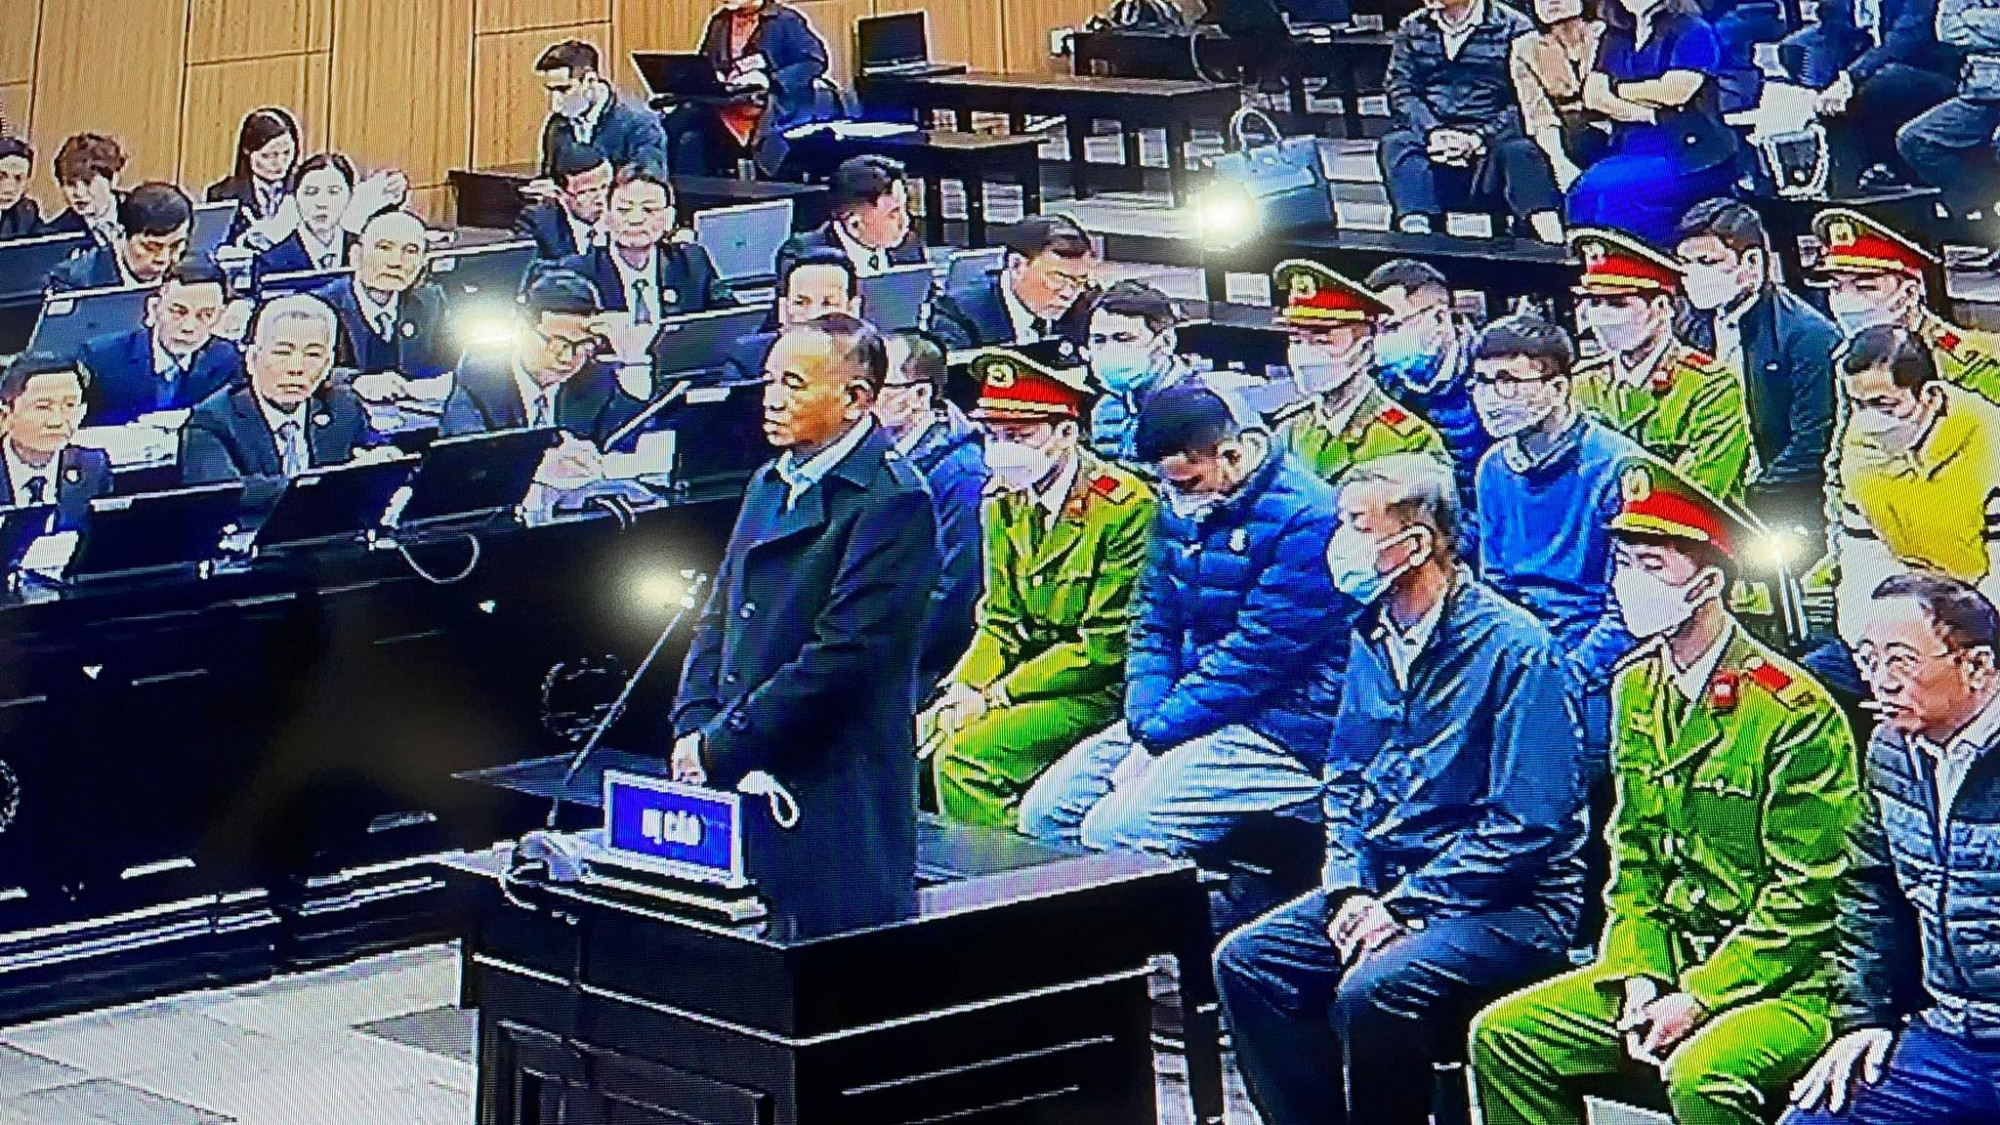 Cựu bí thư Trần Đình Thành cùng các bị cáo tại tòa